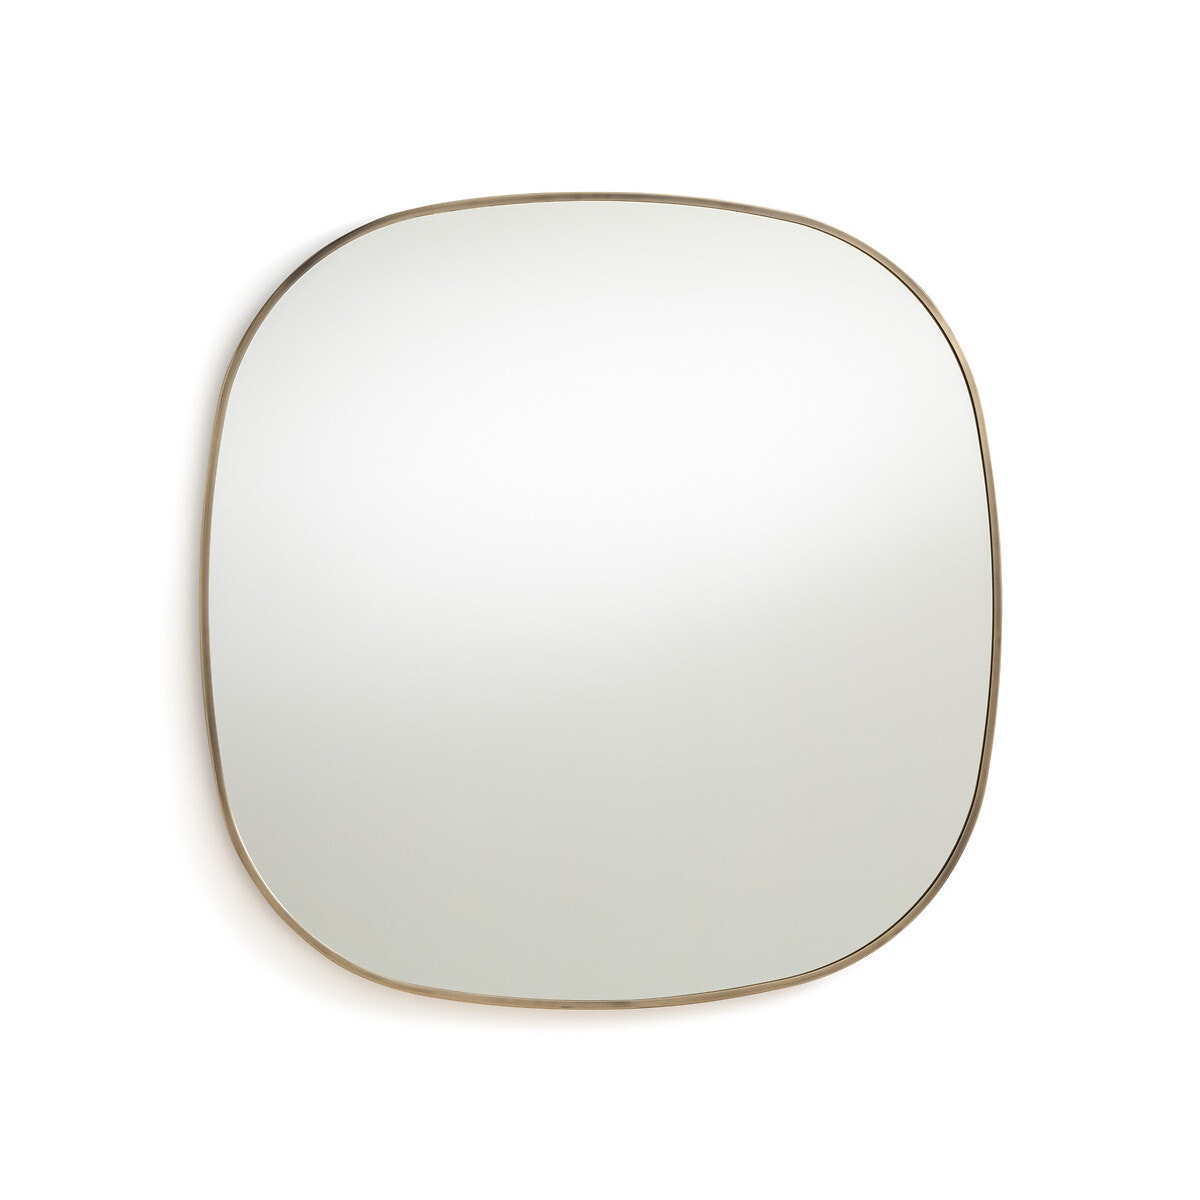 Μεταλλικός καθρέφτης με μπρονζέ παλαιωμένο φινίρισμα Υ80 εκ., Caligone